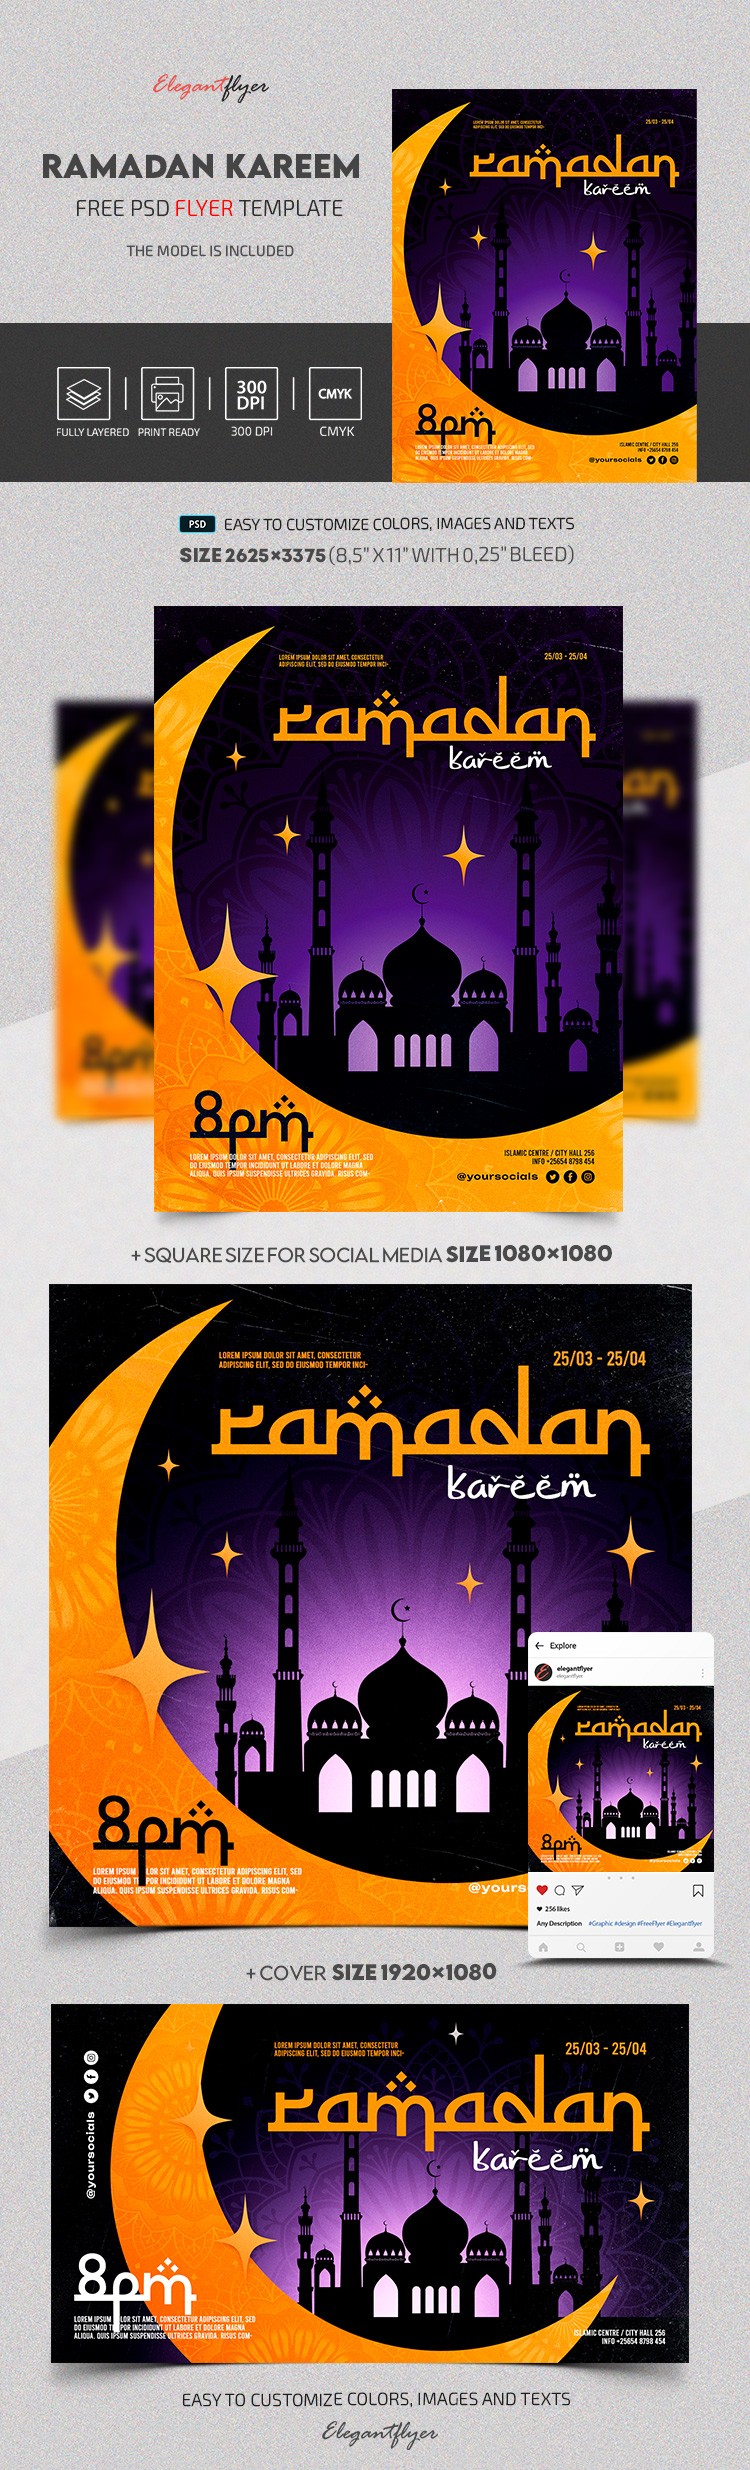 Ramadán Kareem by ElegantFlyer